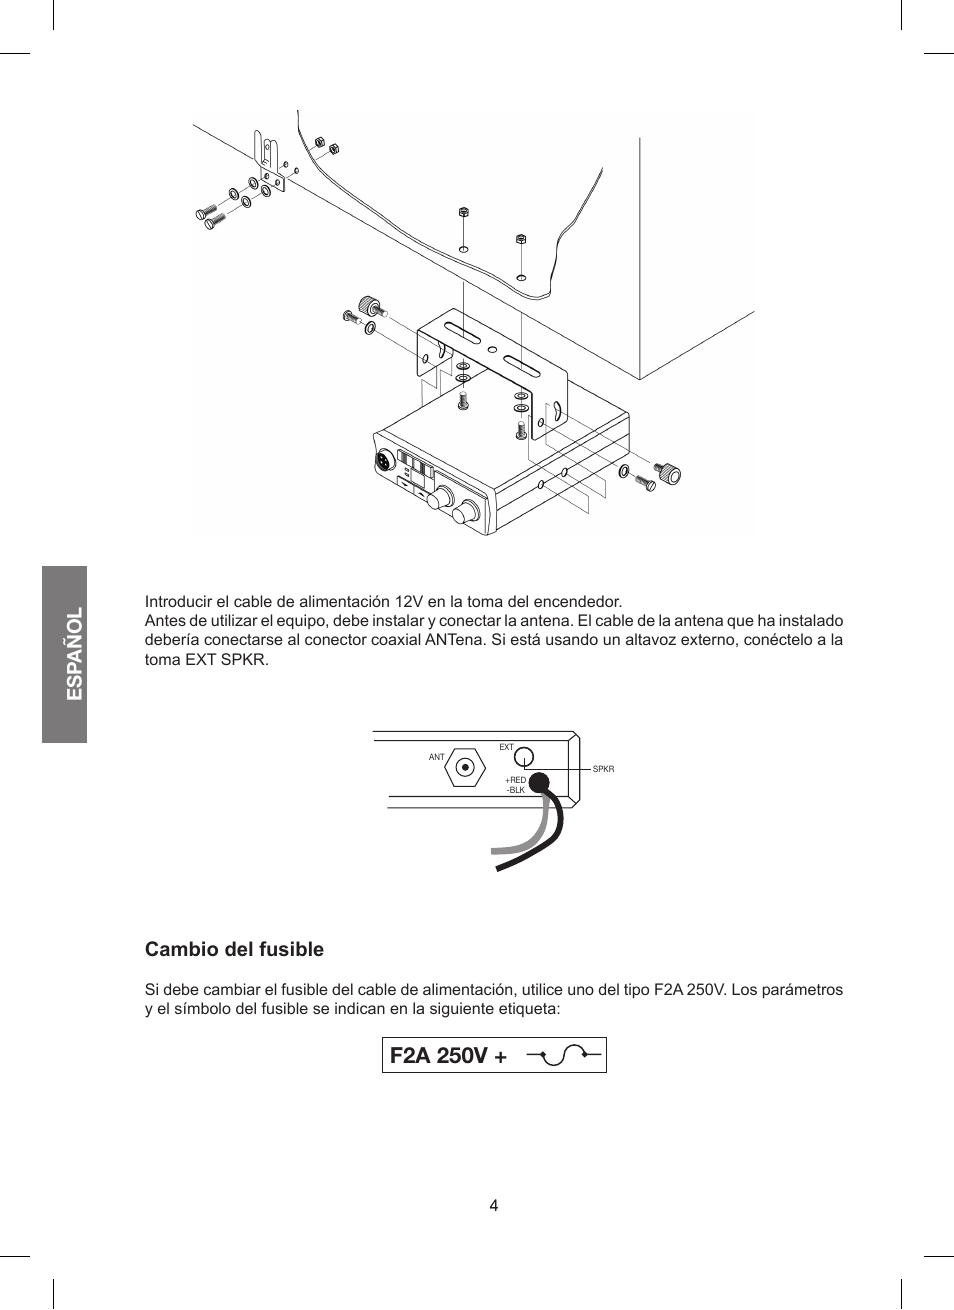 F2a 250v, Esp añol, Cambio del fusible | MIDLAND 200 User Manual | Page 28  / 72 | Original mode